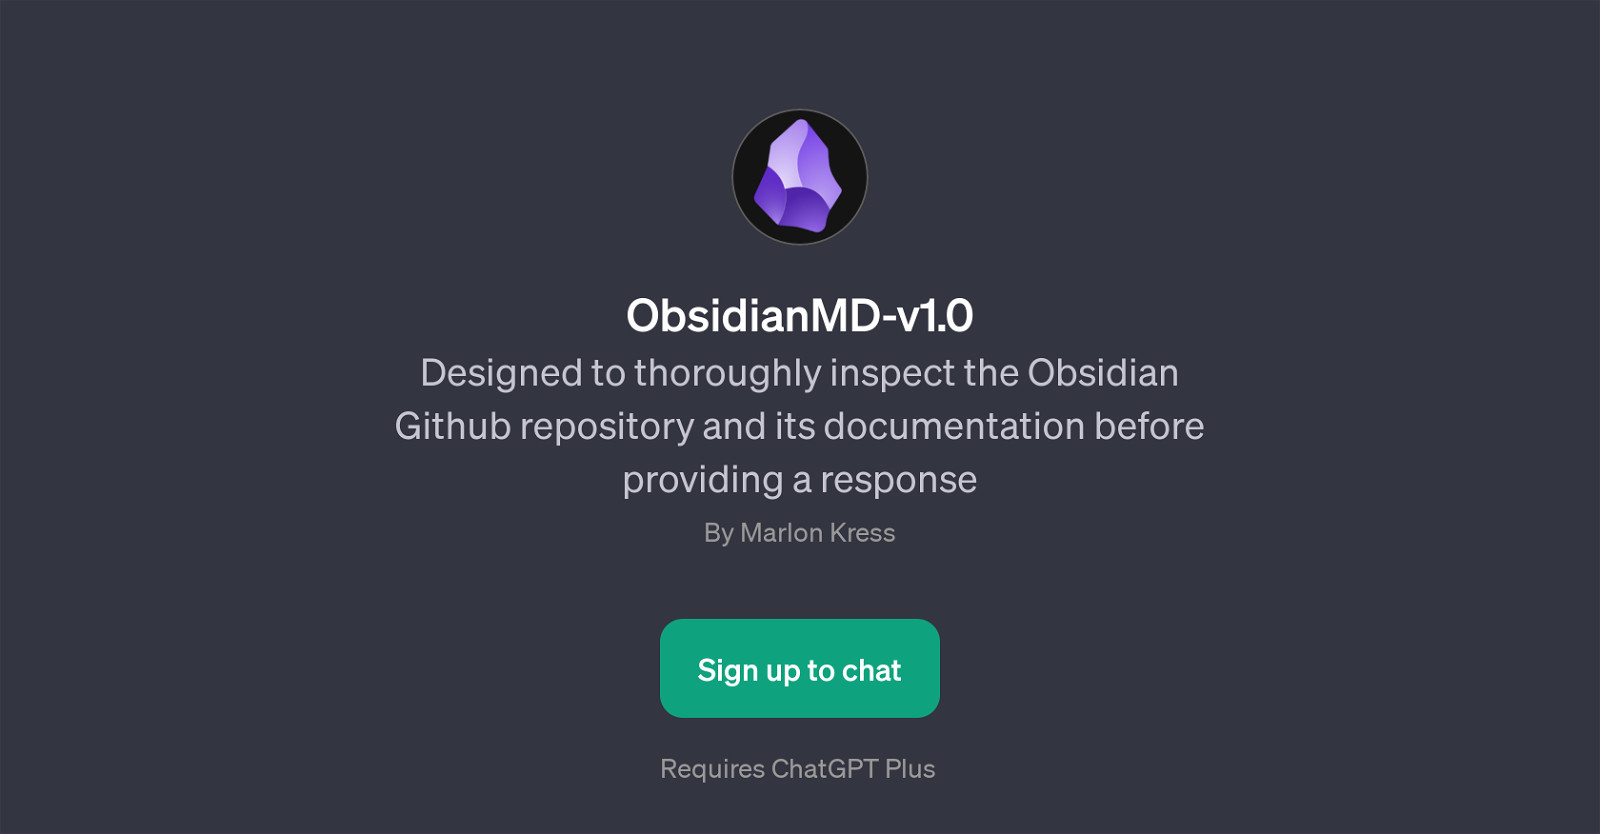 ObsidianMD-v1.0 website